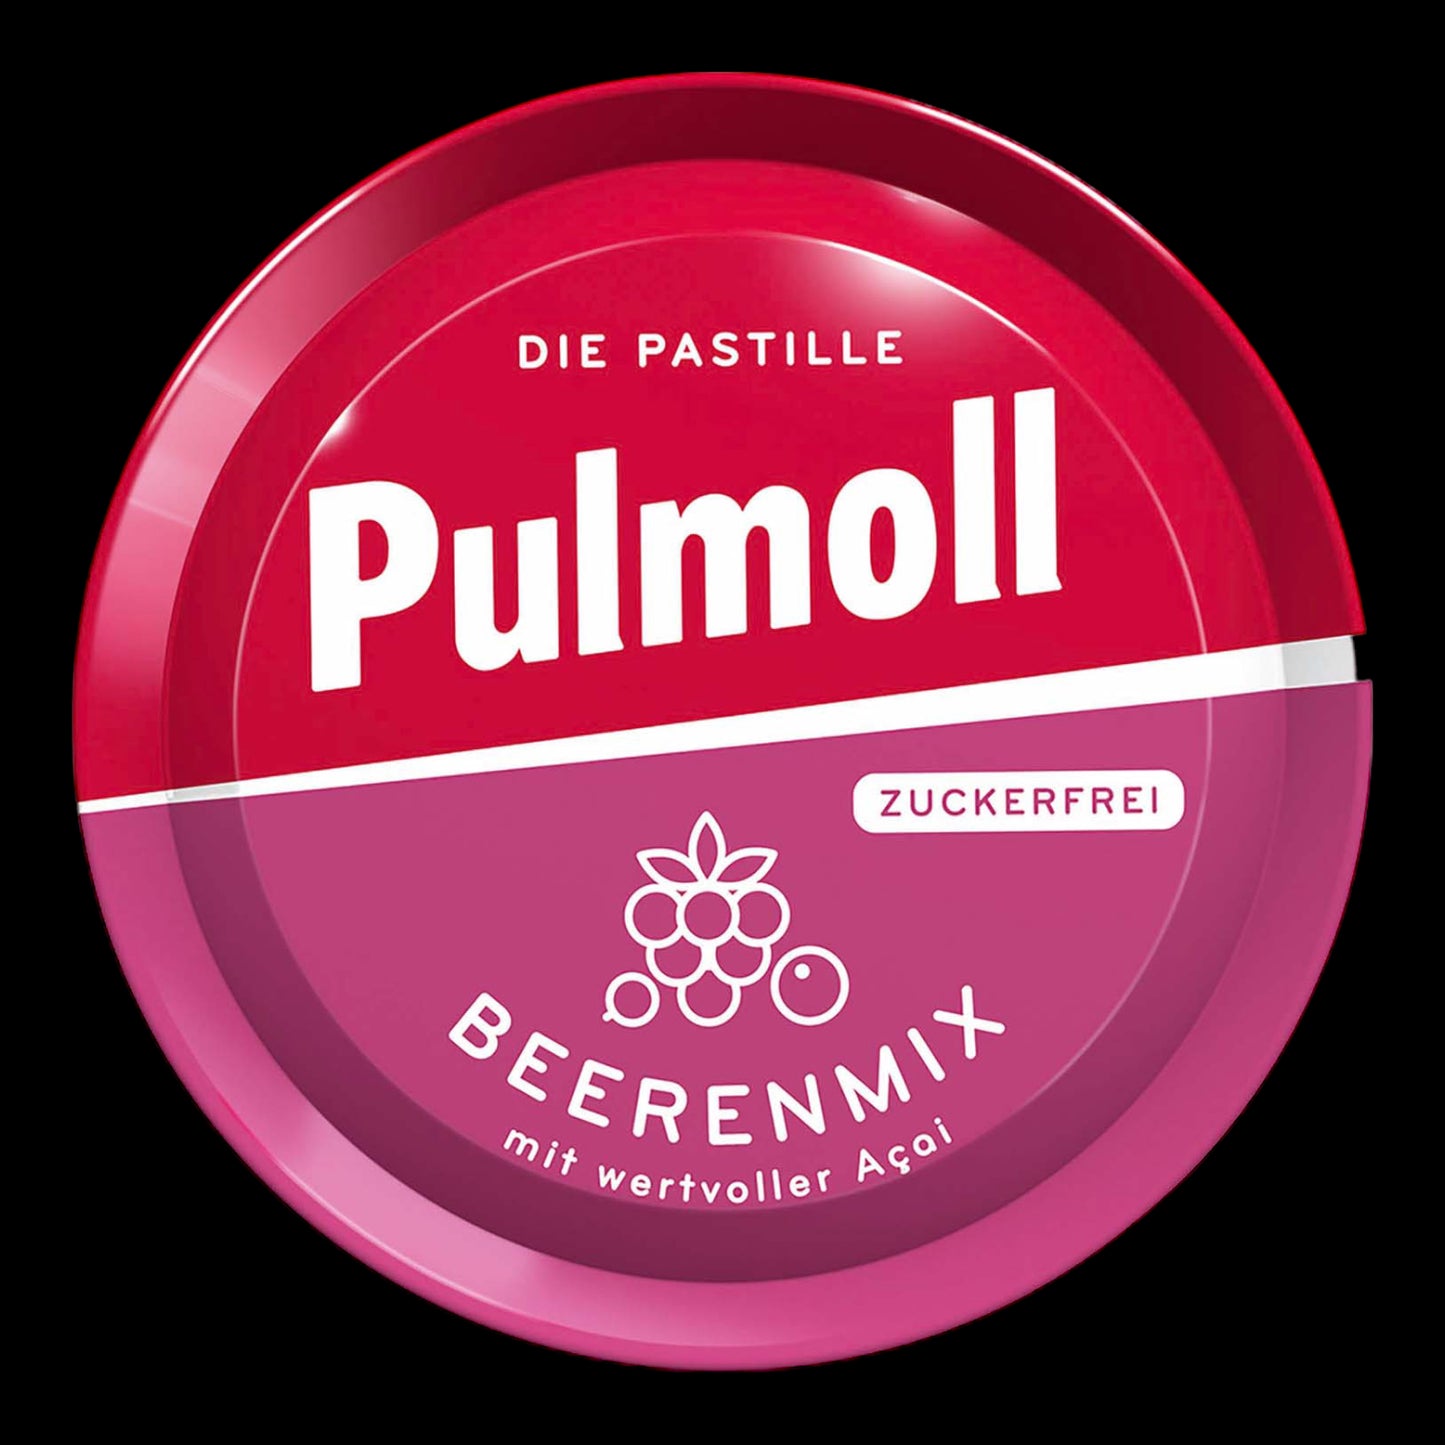 Pulmoll Beerenmix zuckerfrei 50g